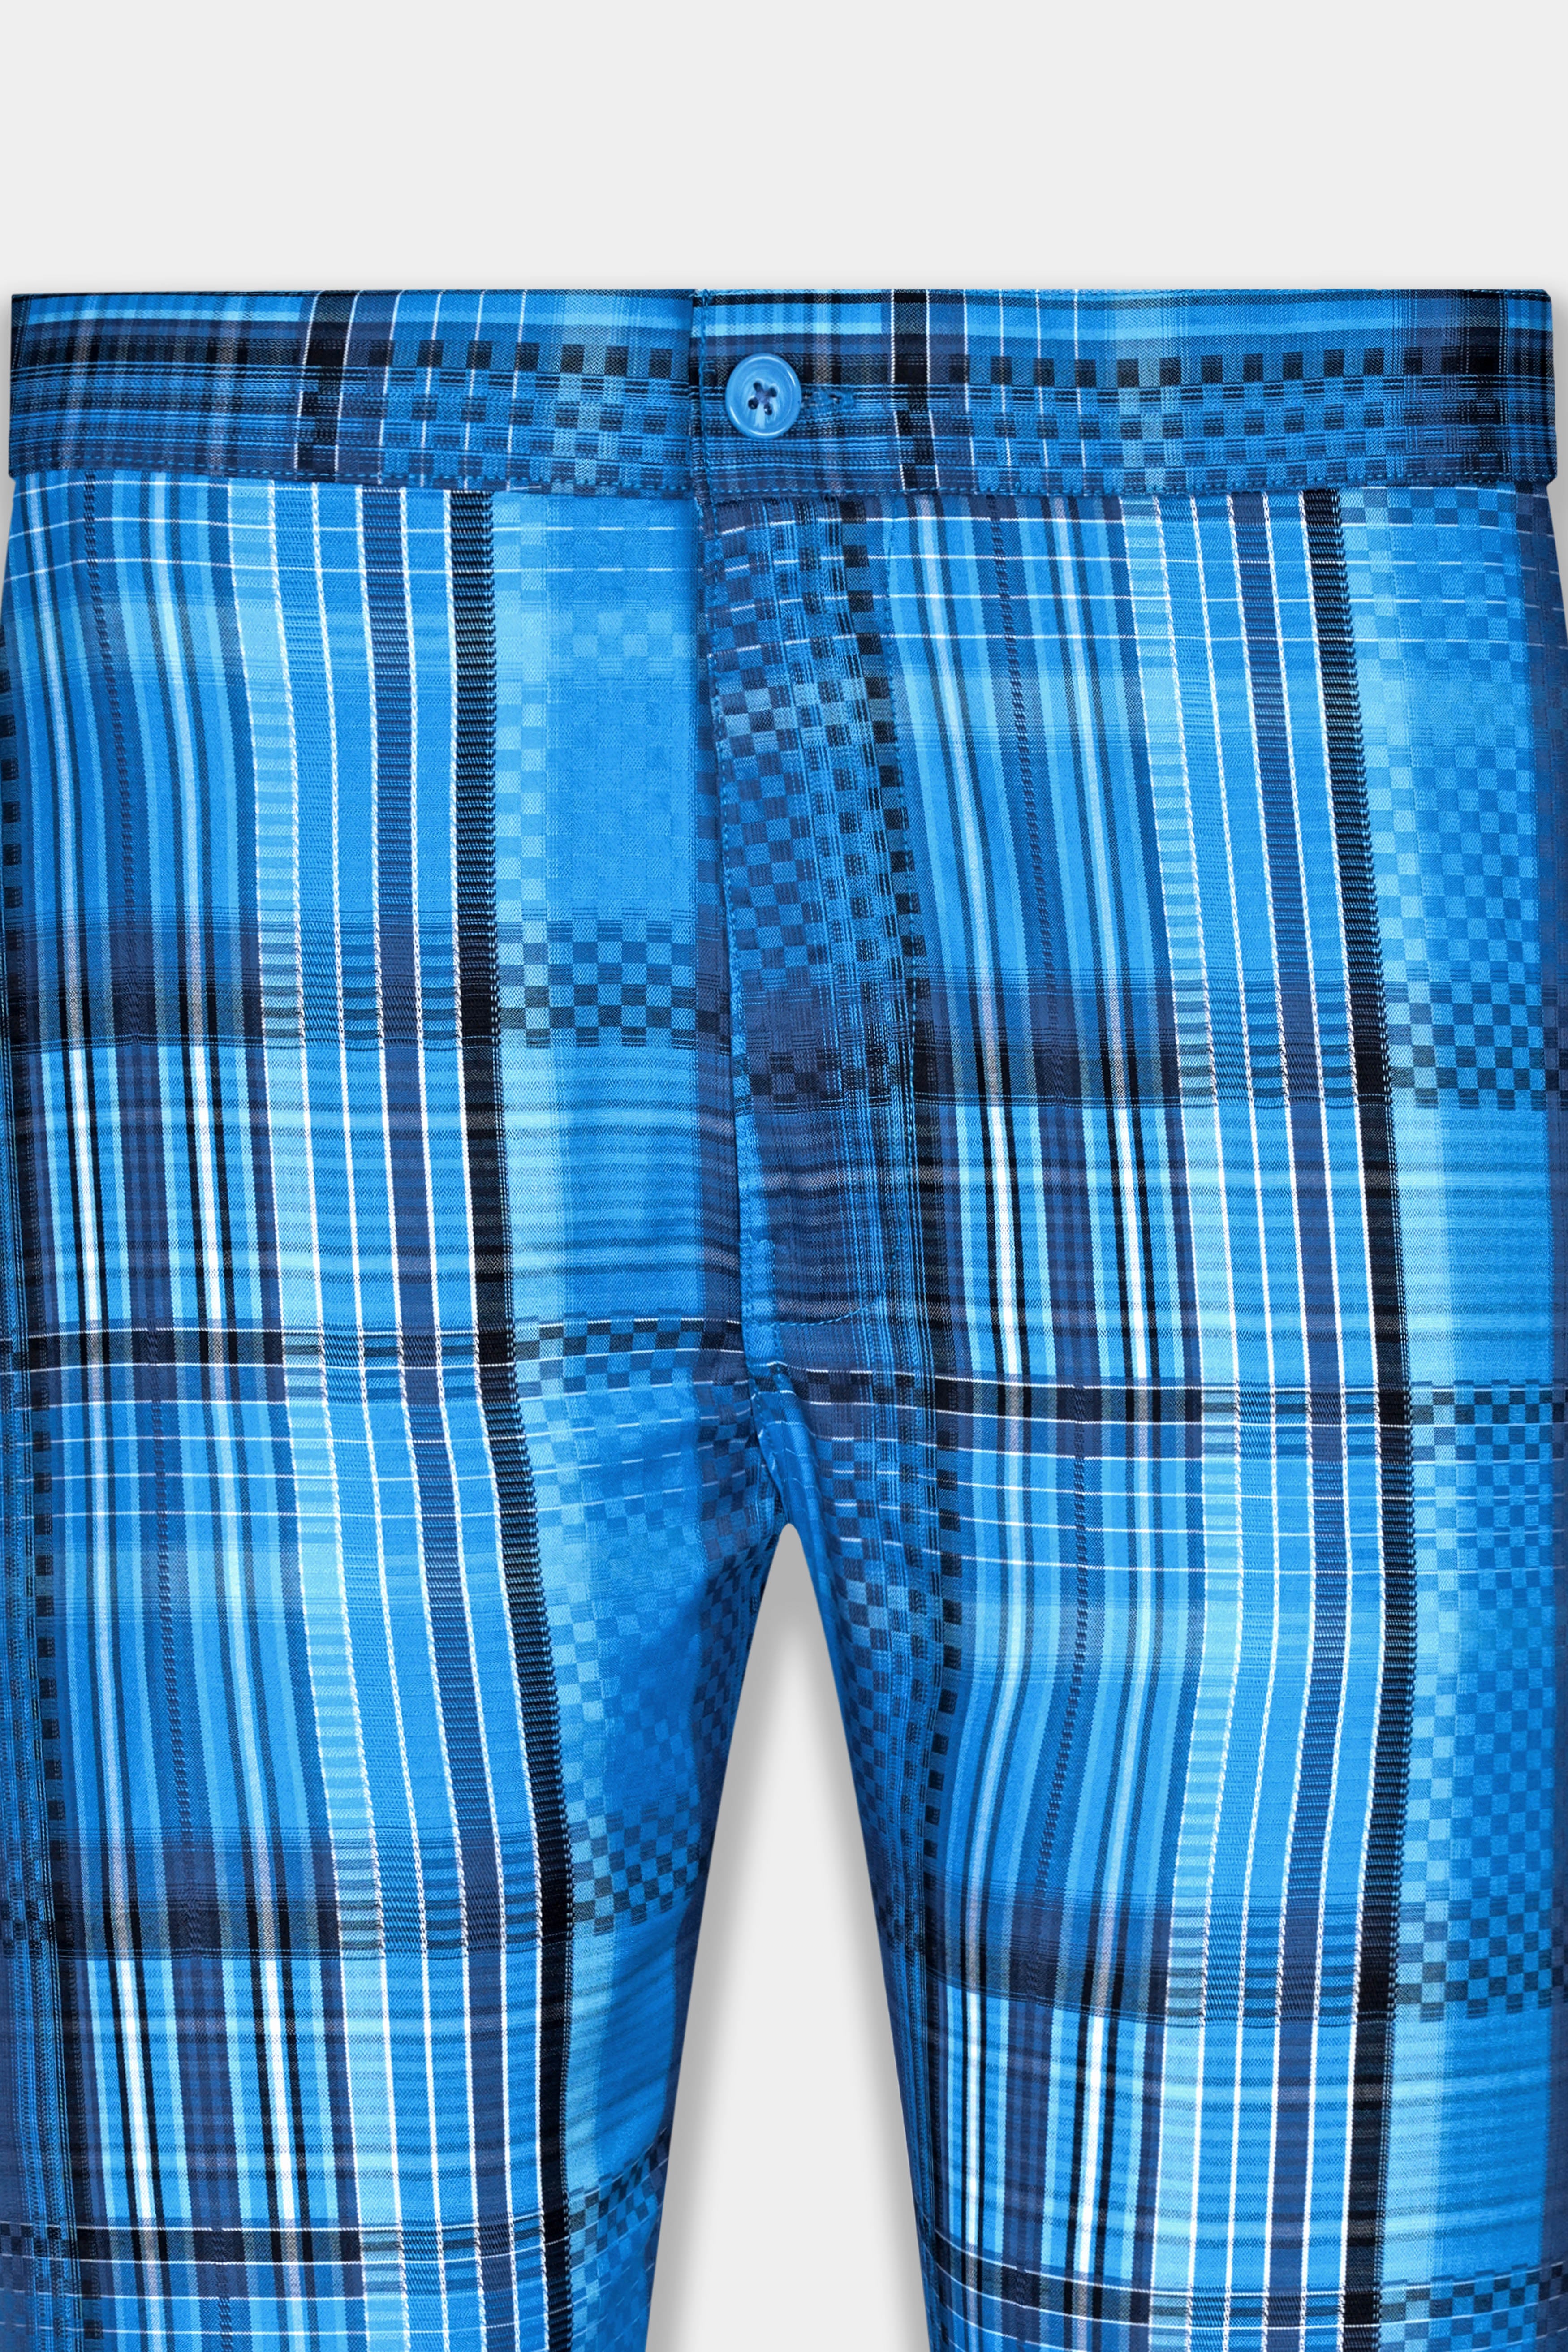 Pictoh Blue Jacquard Textured Premium Cotton Lounge Pant